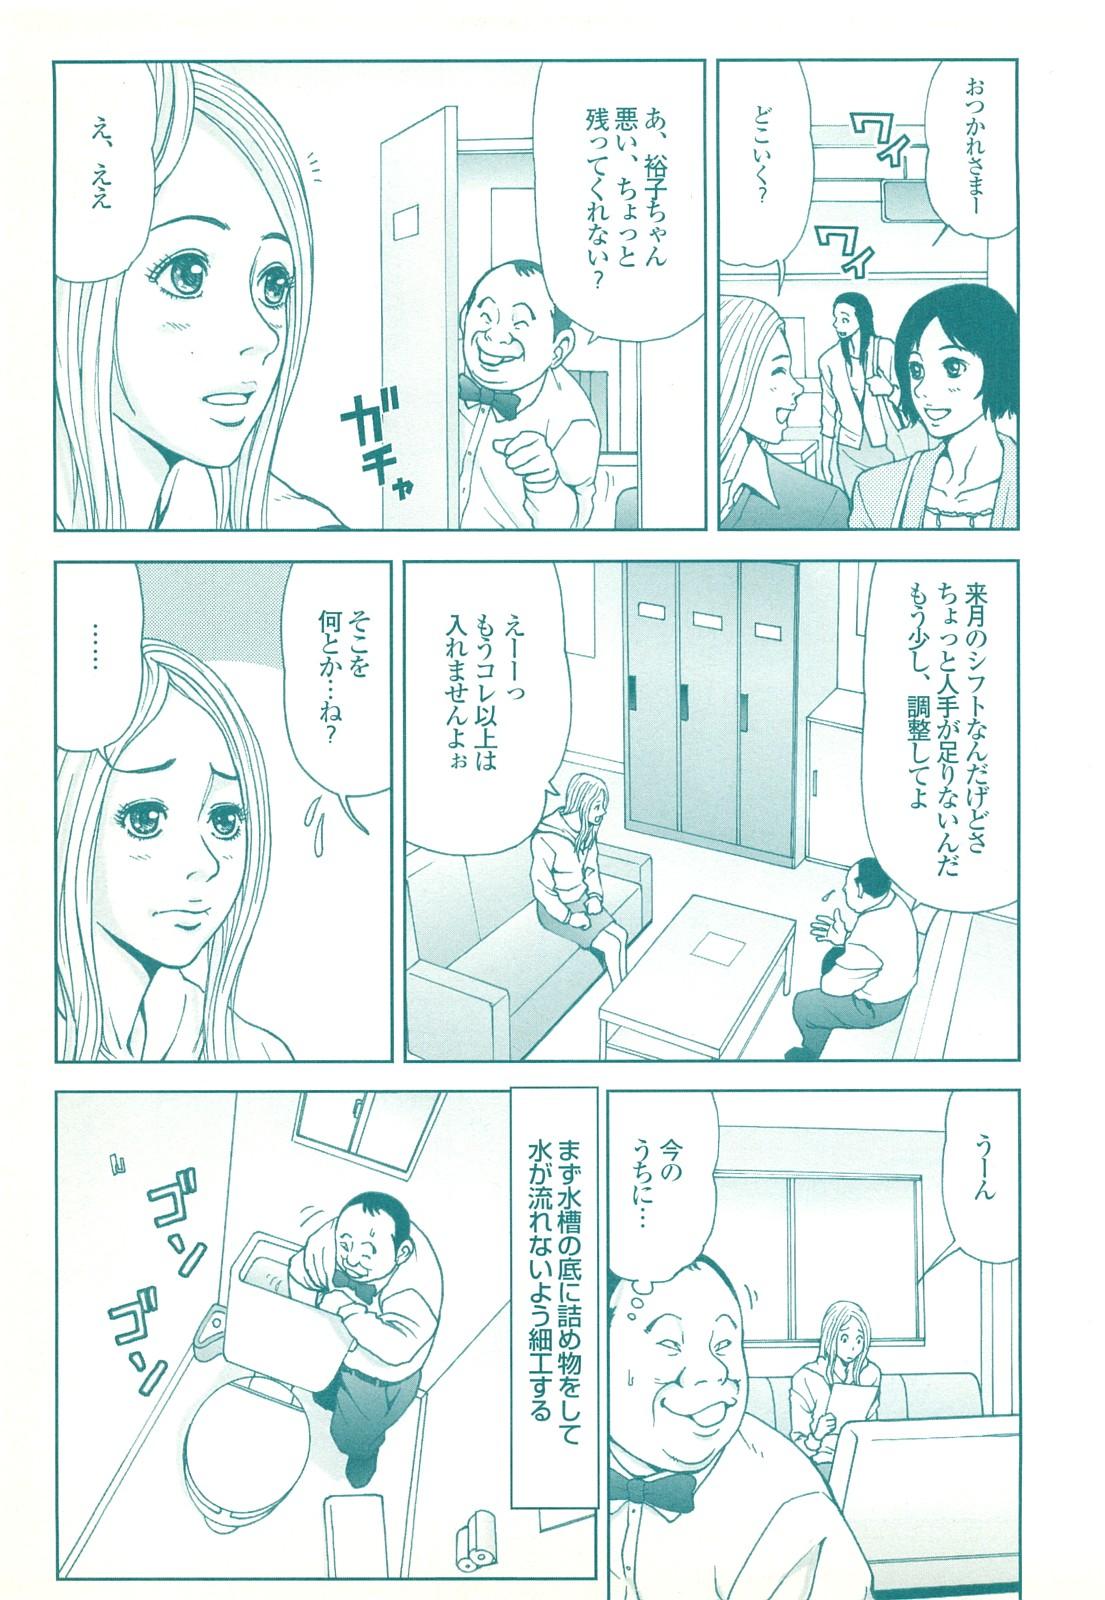 コミック裏モノJAPAN Vol.18 今井のりたつスペシャル号 186